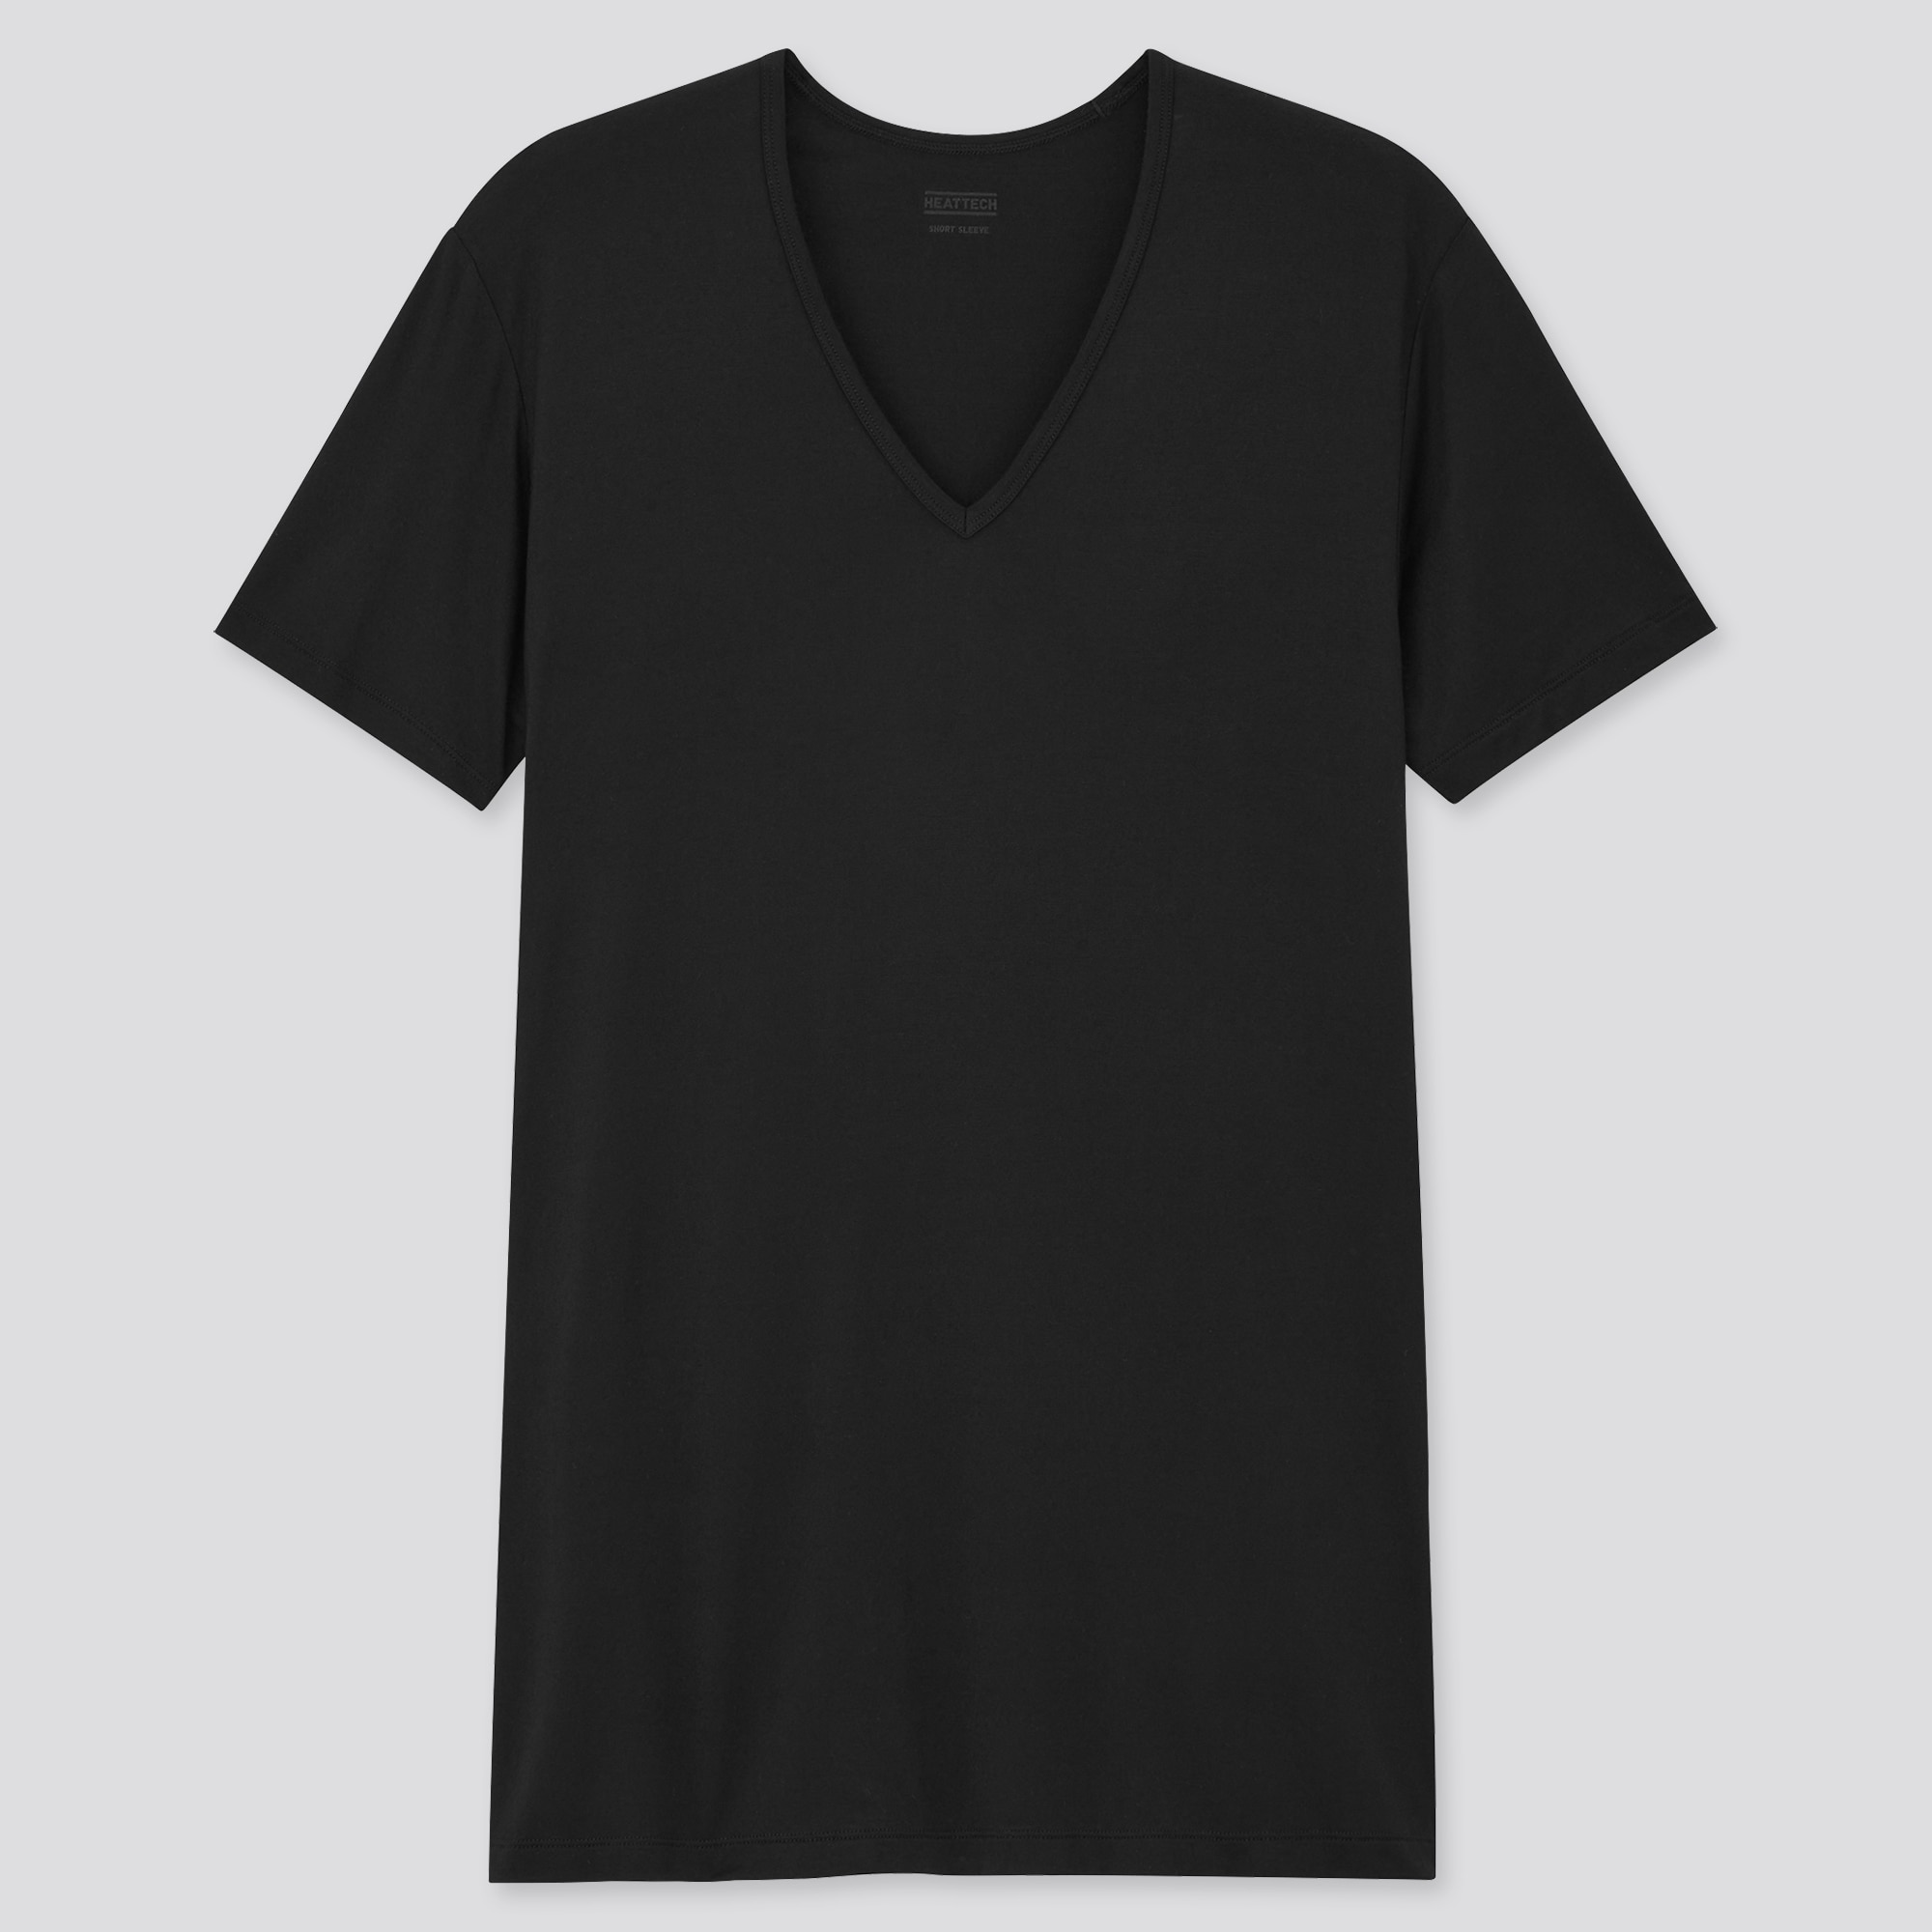 透けたらng メンズのインナーシャツの正解は オススメ人気ブランド３選 紳士のシャツ